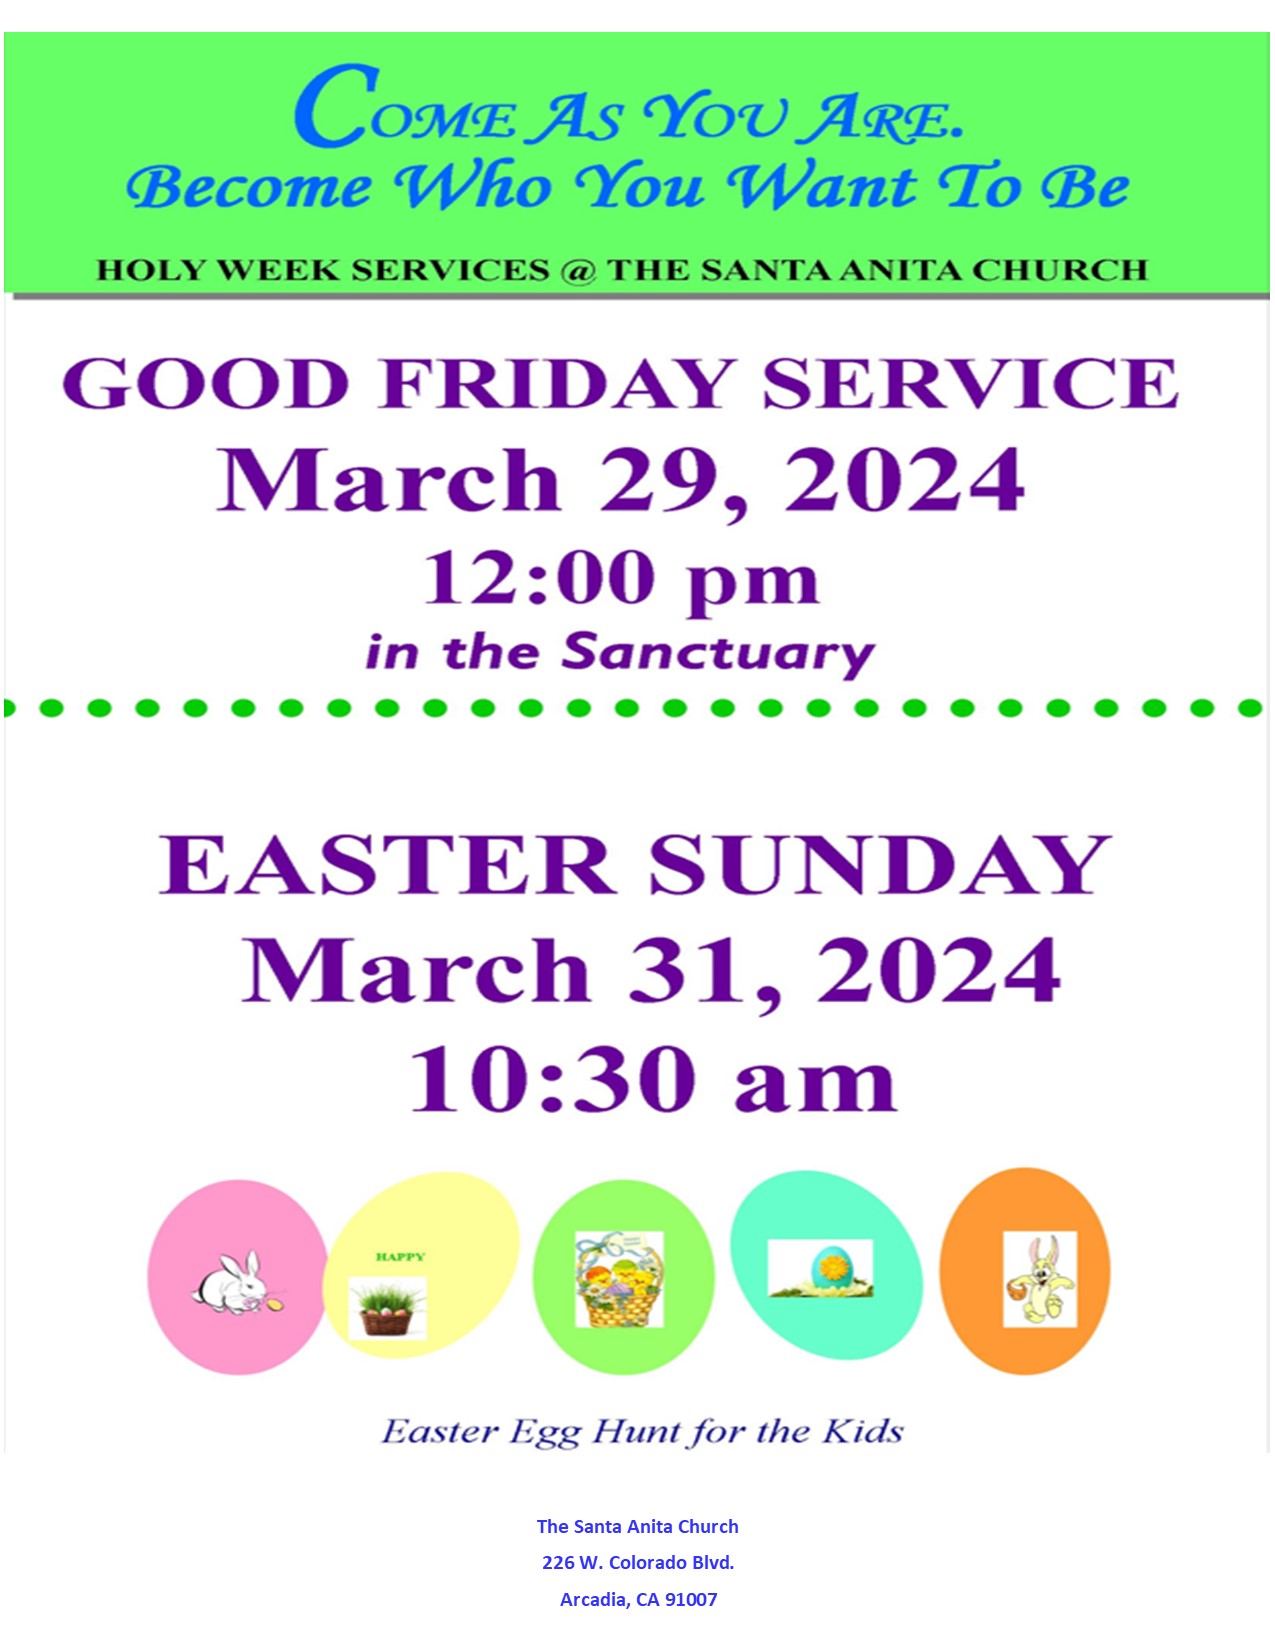 Easter and Good Friday services at the Santa Anita Church